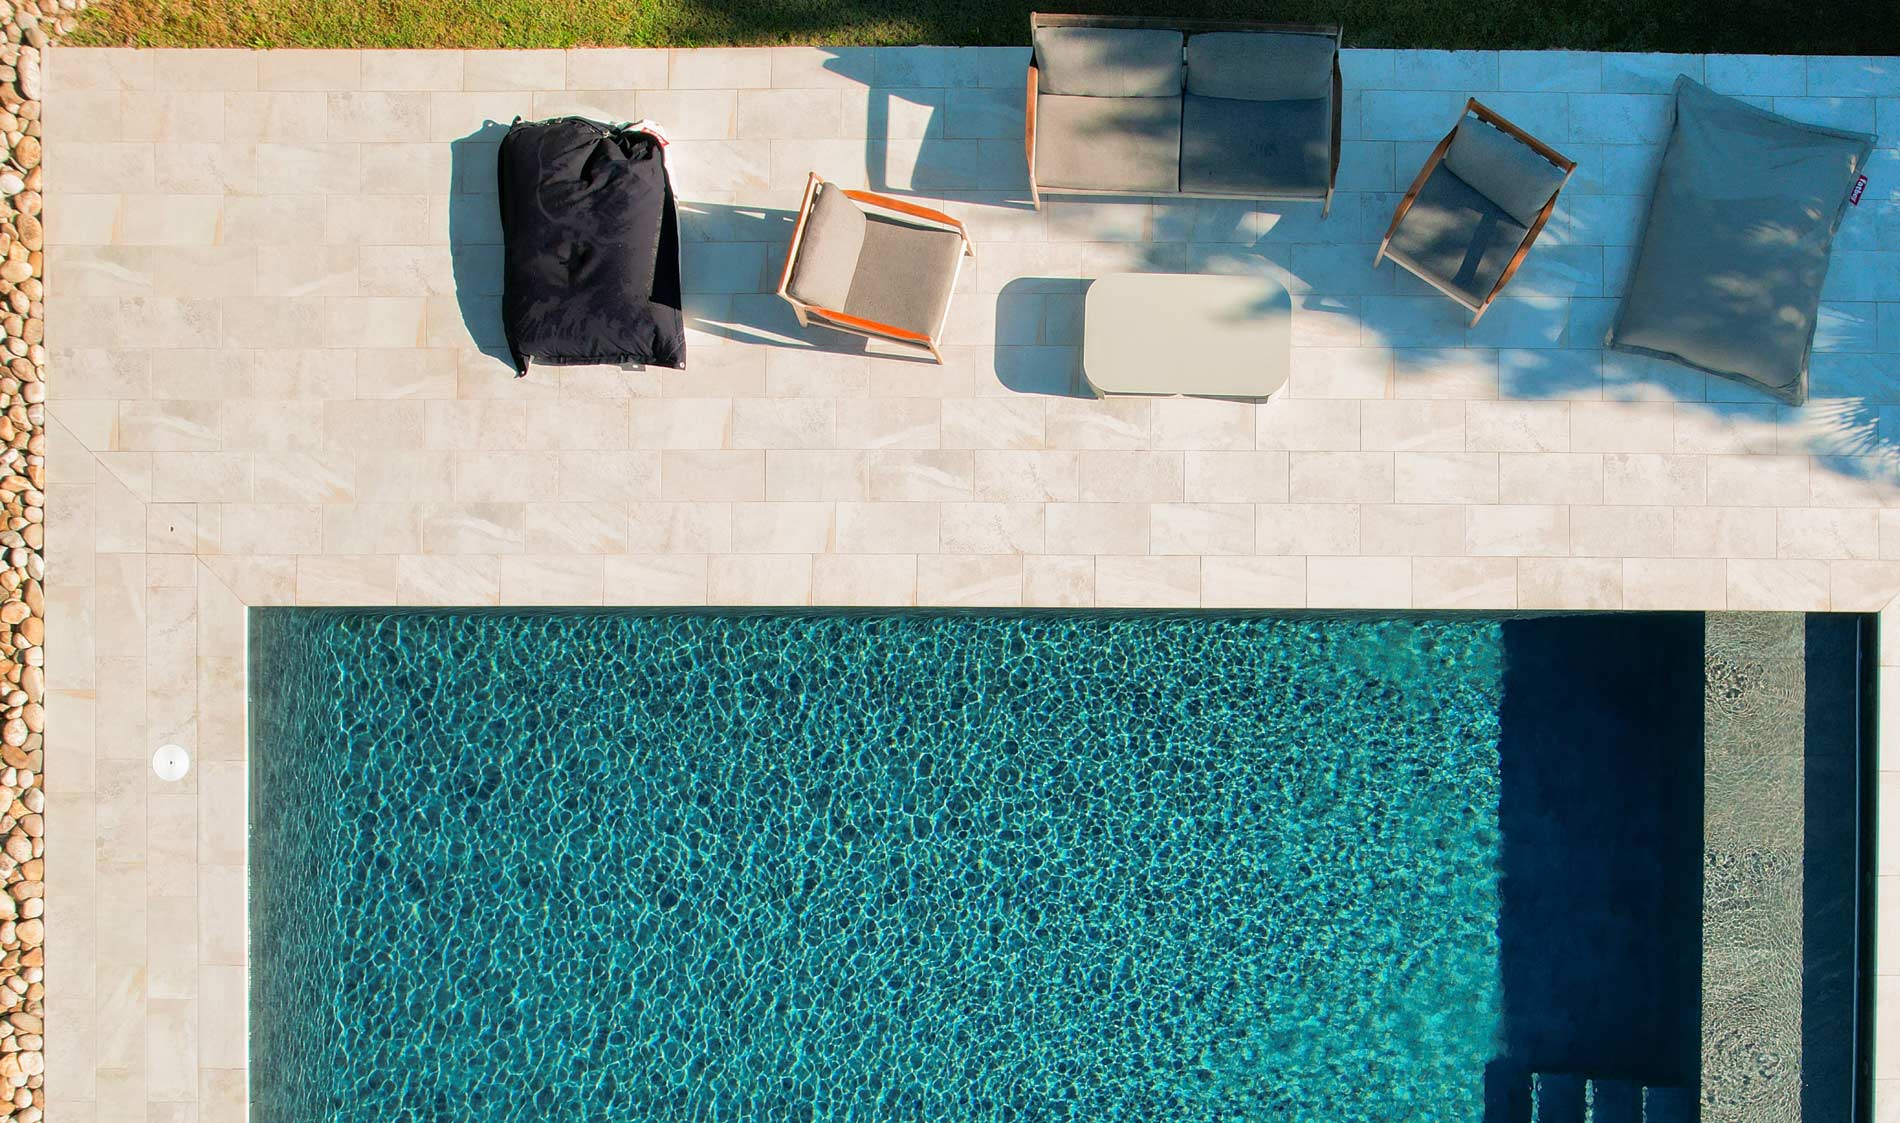 Vue aérienne d'une piscine avec terrasse carrelée blanche et mobilier de jardin réalisé par Aloha